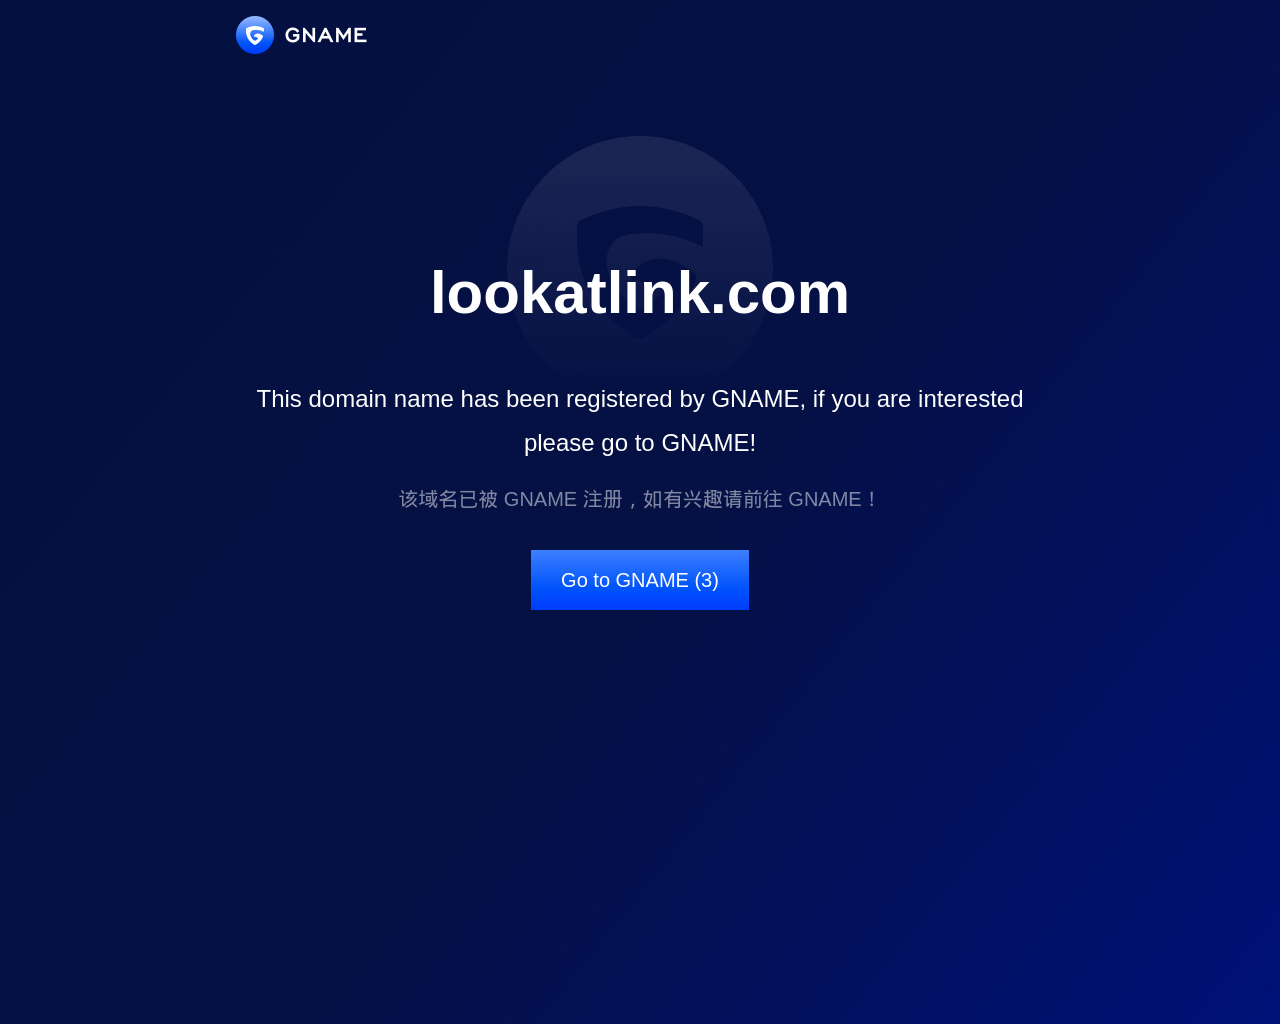 lookatlink.com